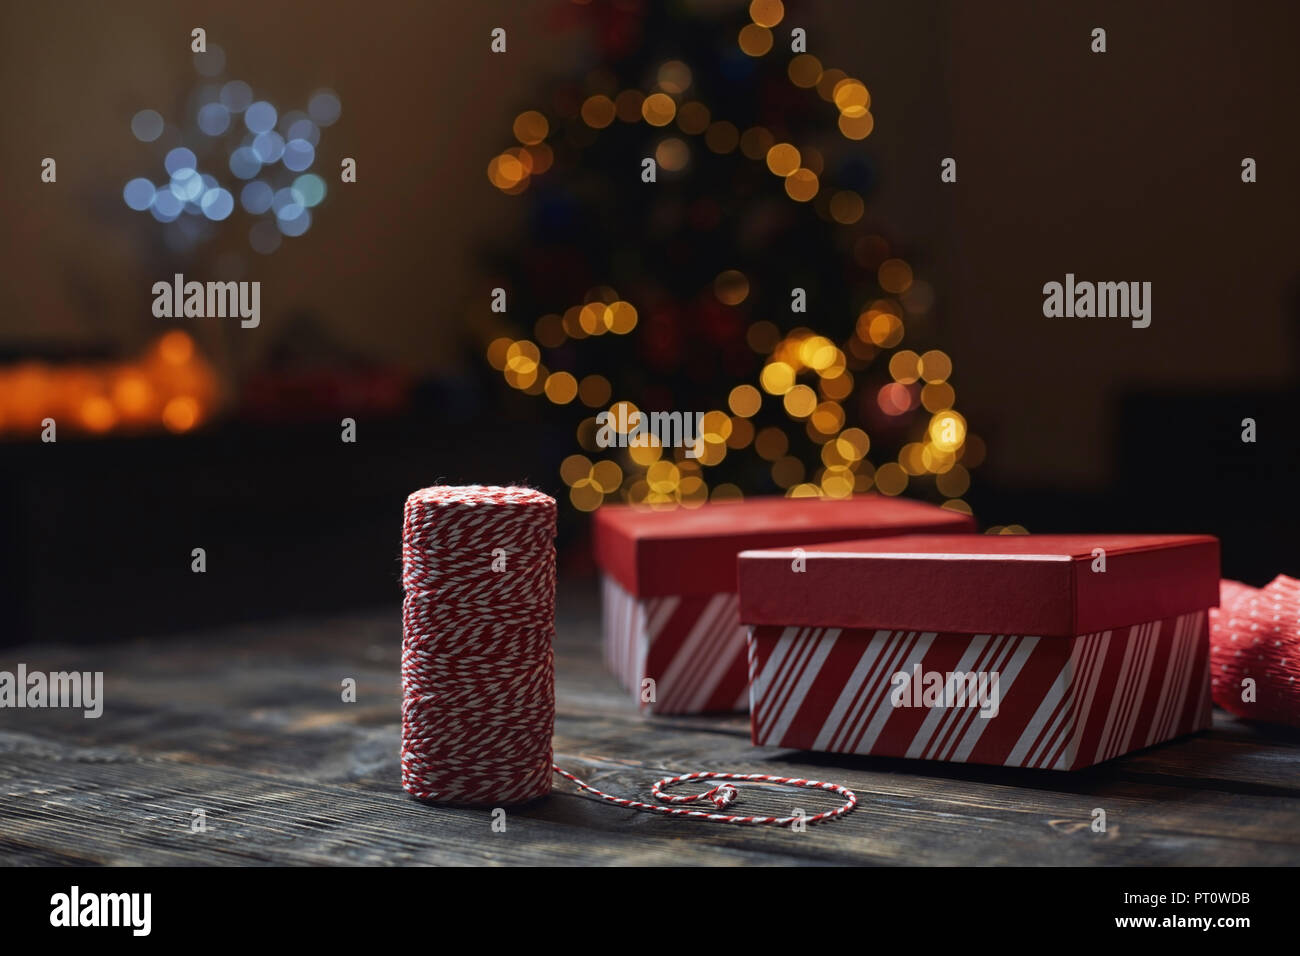 Rolle von rot-weißen packthread und geschenkboxen vor der beleuchteten Weihnachtsbaum Stockfoto